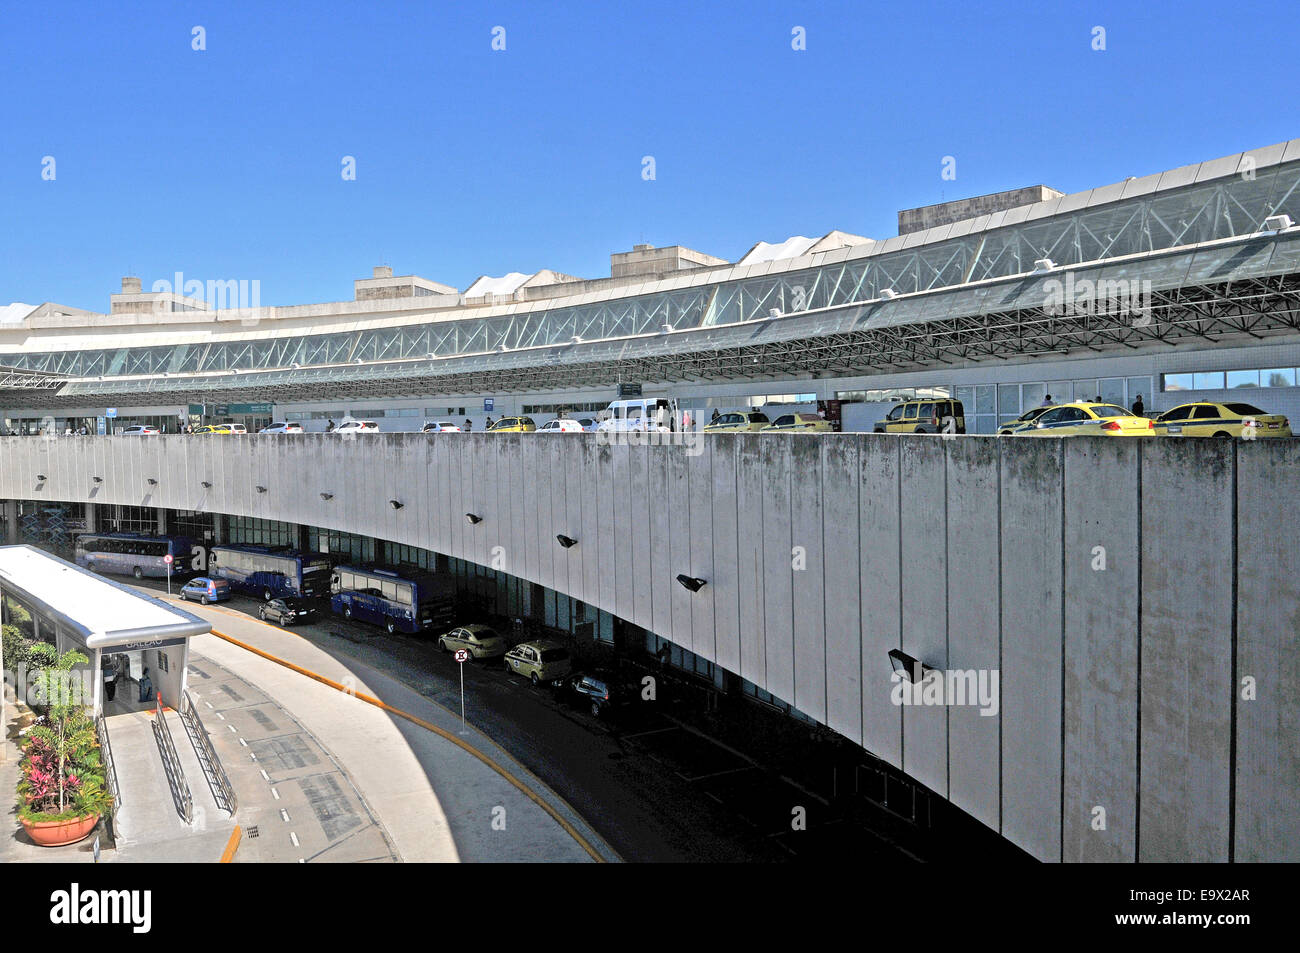 Galeao aeroporto internazionale di Rio de Janeiro in Brasile Foto Stock